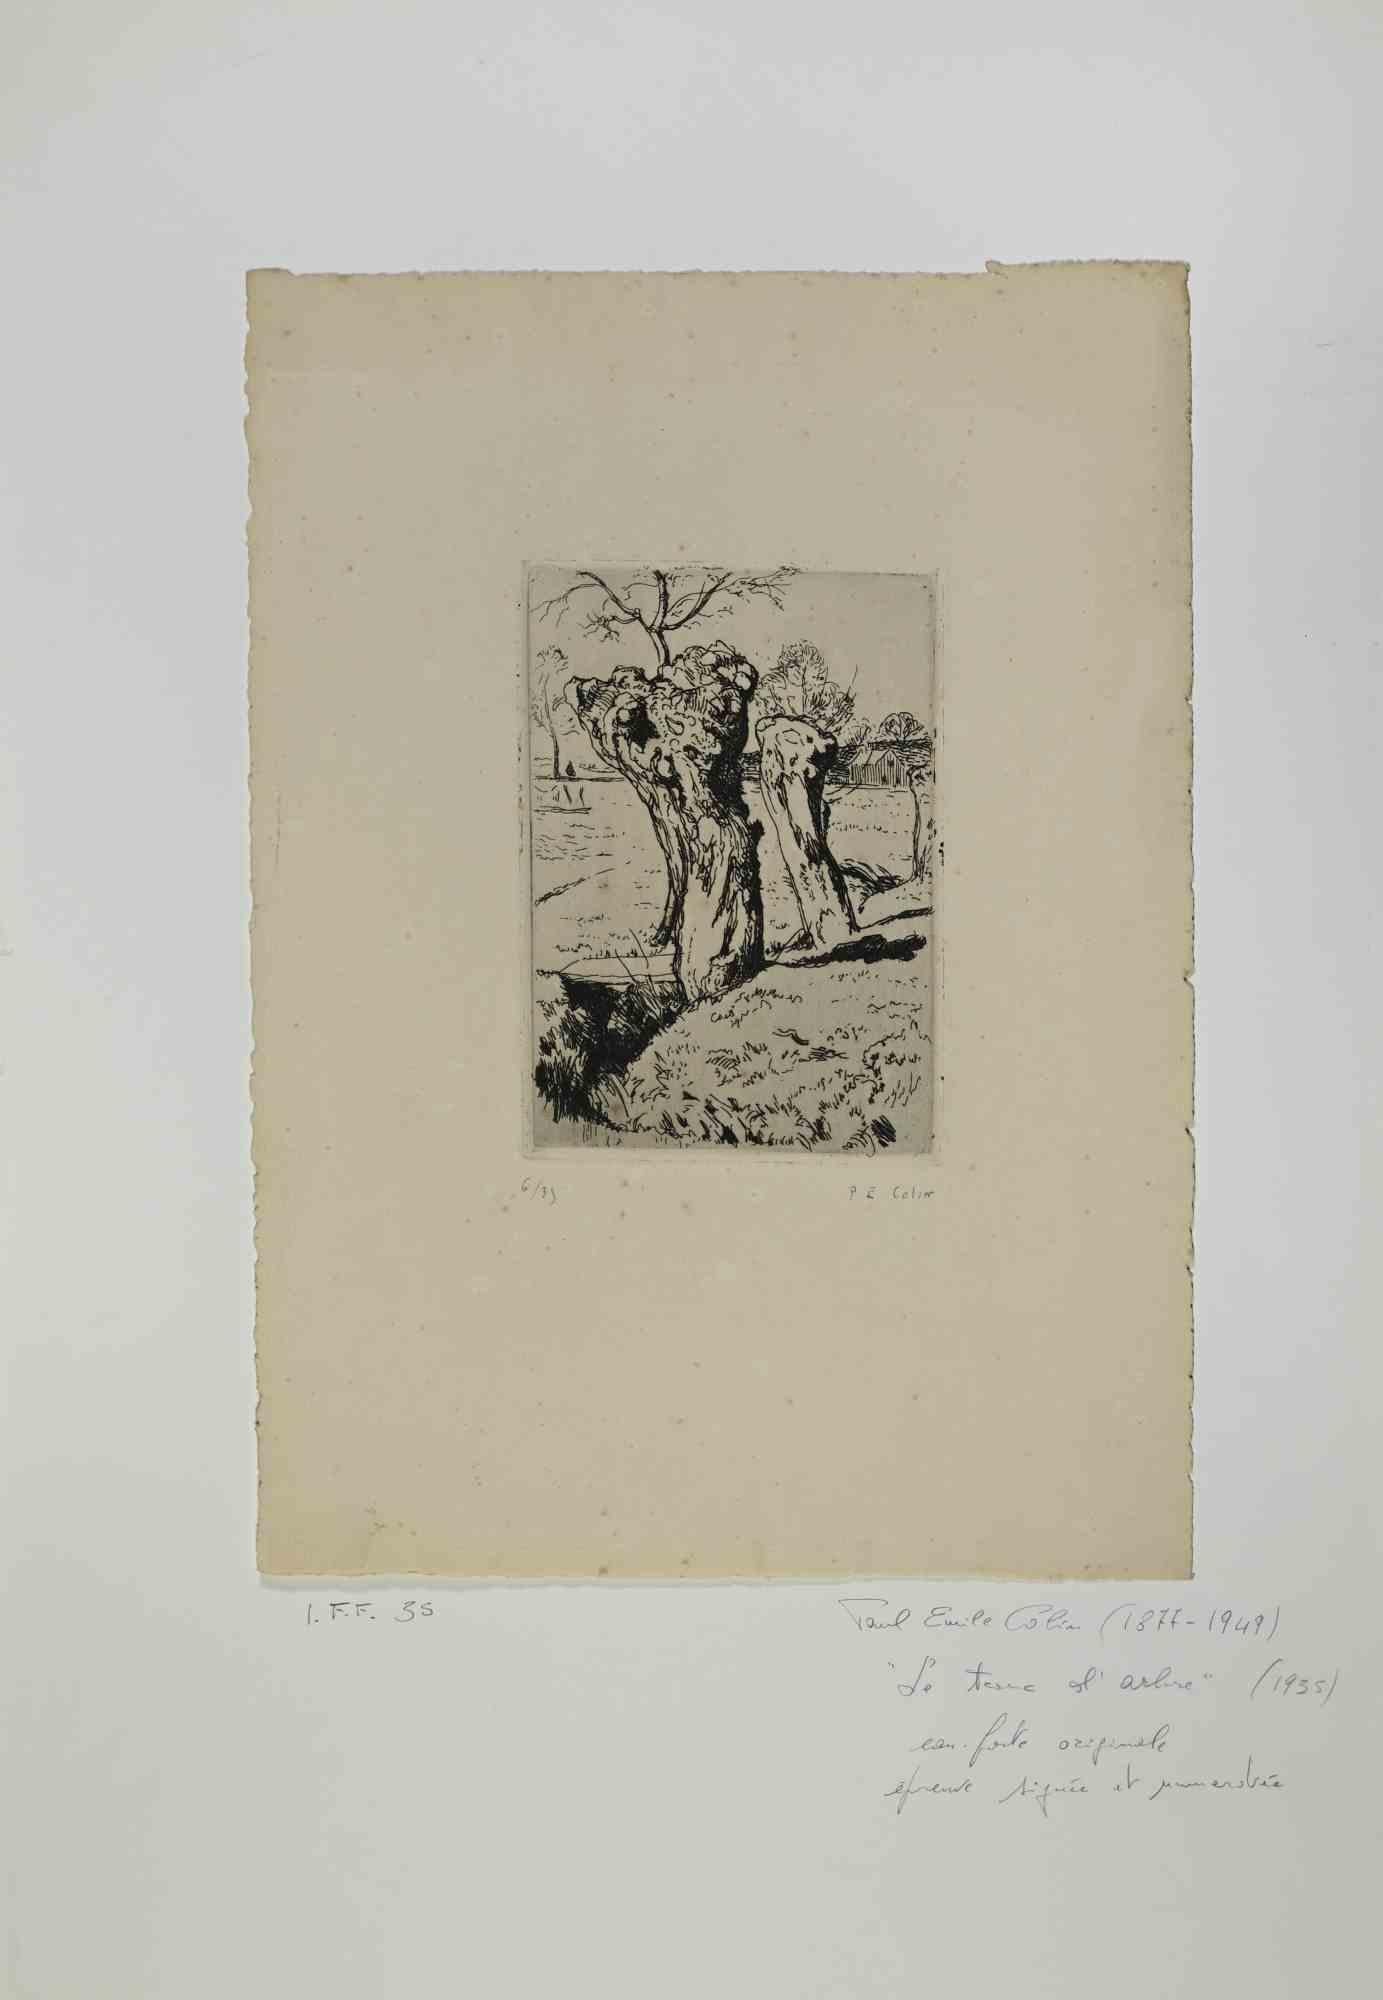 Le Tronc de l'arbre ist ein Kunstwerk des französischen Künstlers Paul Emile Colin aus dem Jahr 1935.

Schwarz-Weiß-Radierung auf Papier. Handsigniert in der rechten Ecke. Limitierte Auflage von 35 Stück, ex. n. 6 

Das Kunstwerk ist auf